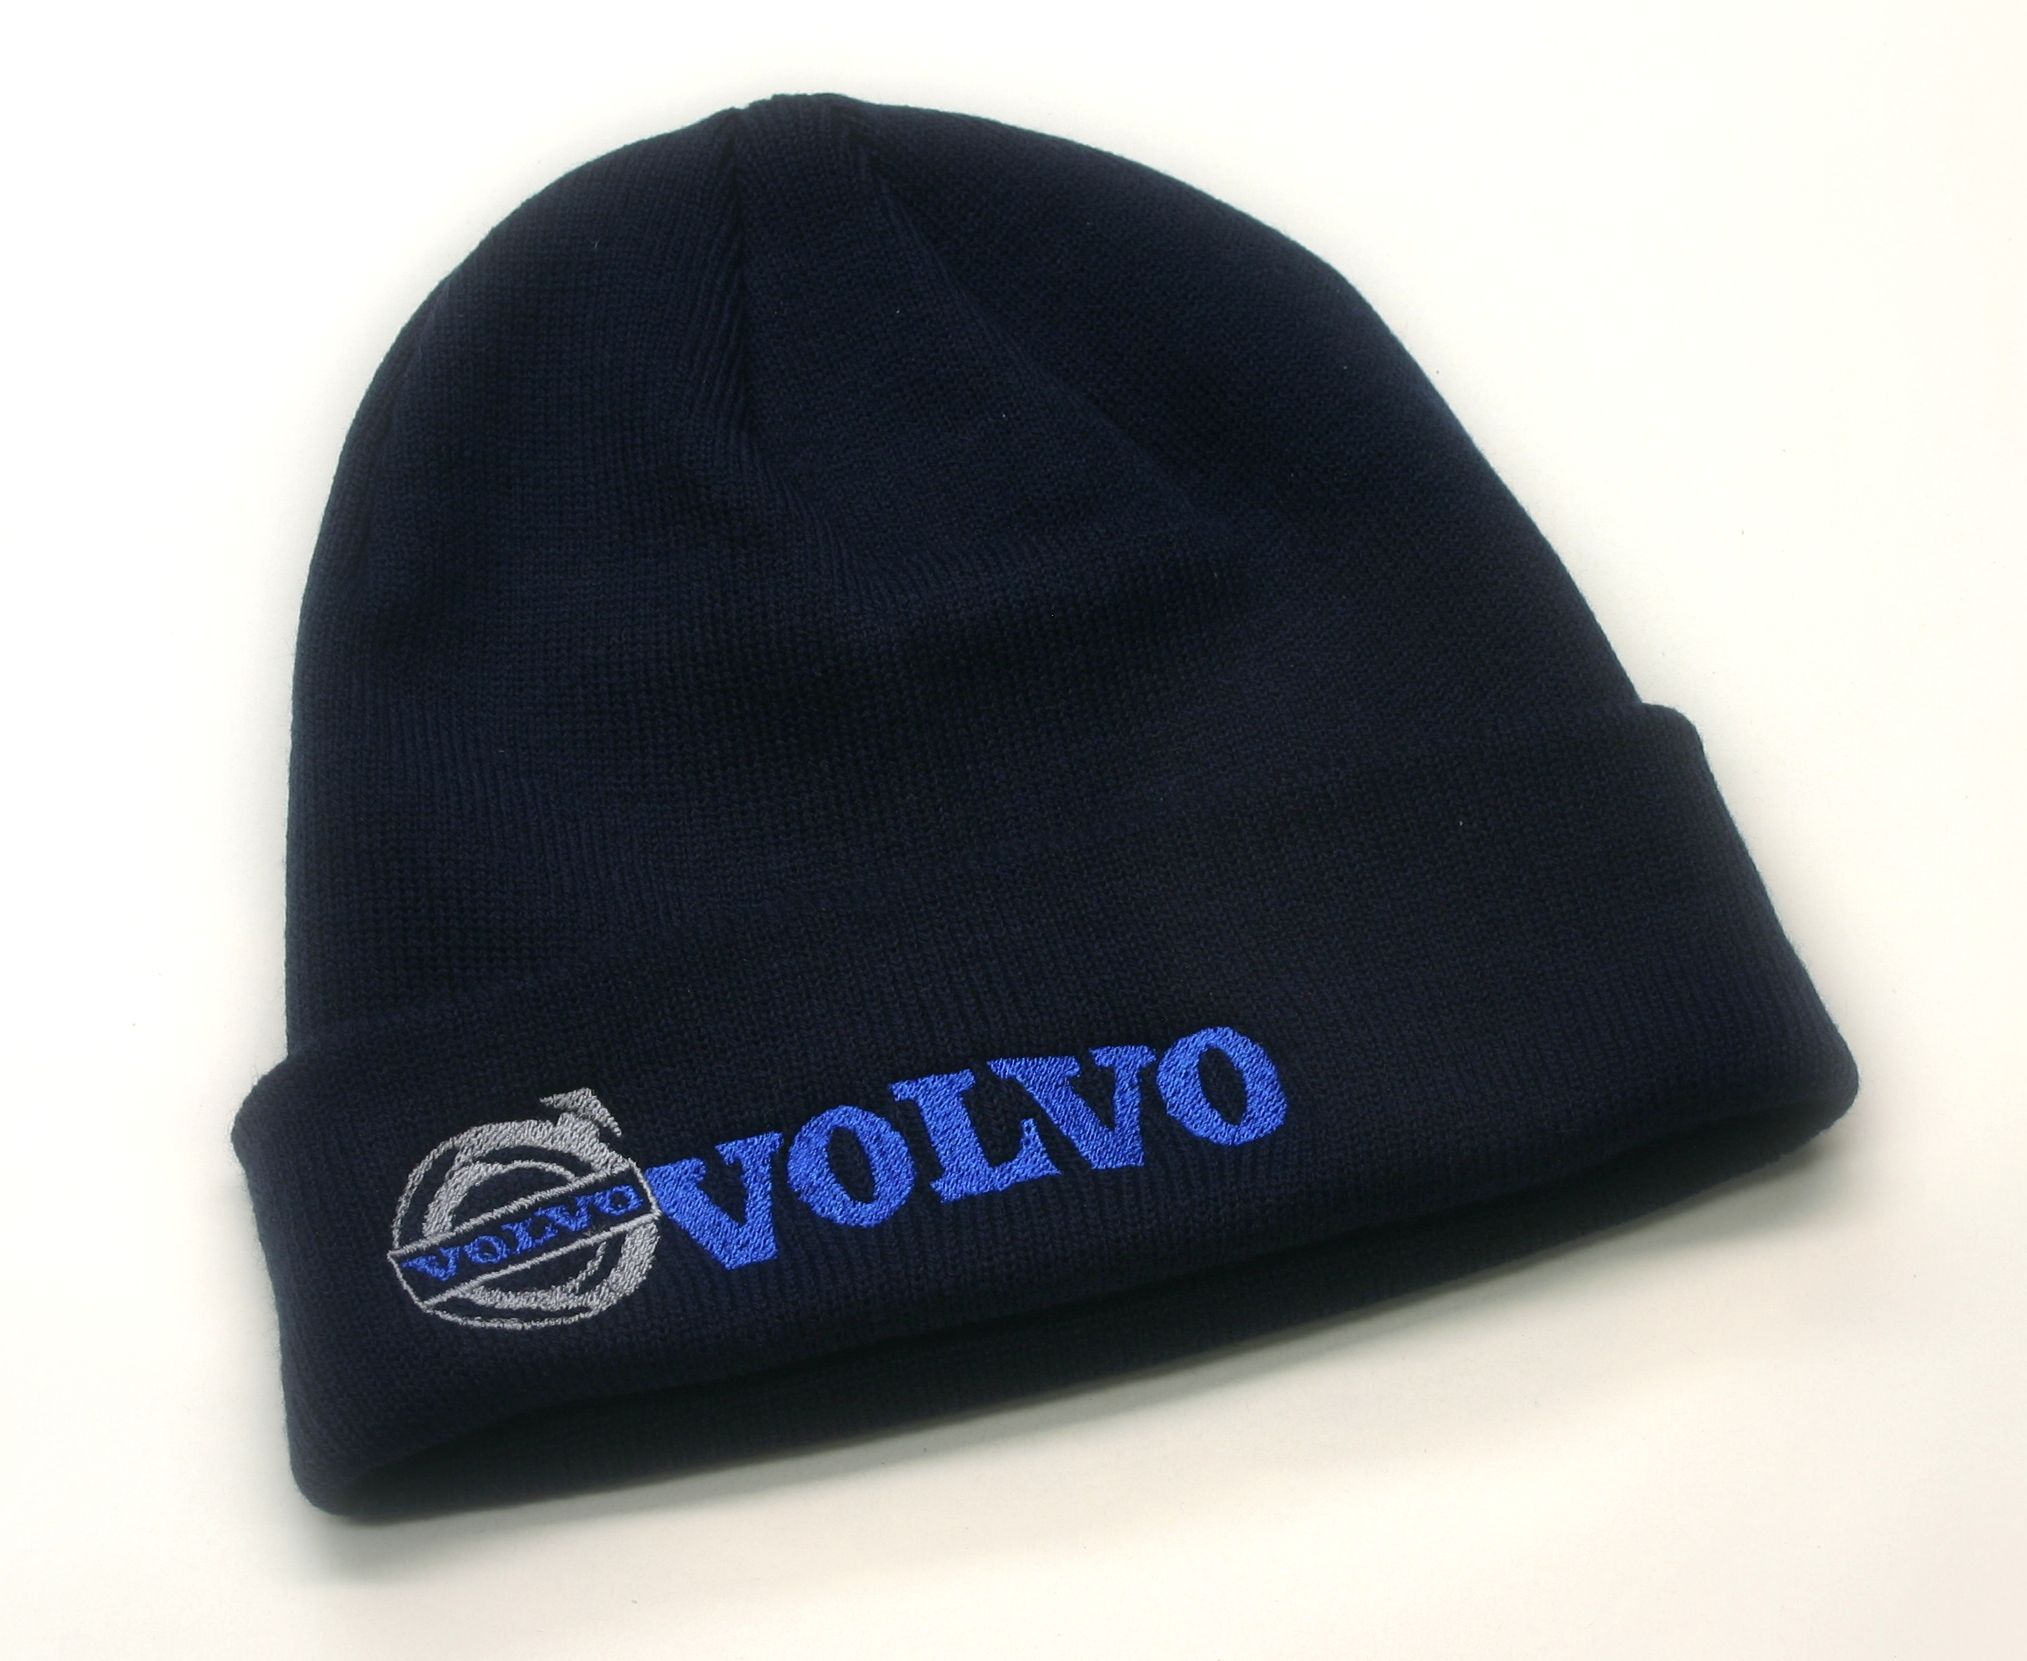 Truck zimní čepice Volvo v barvě černé